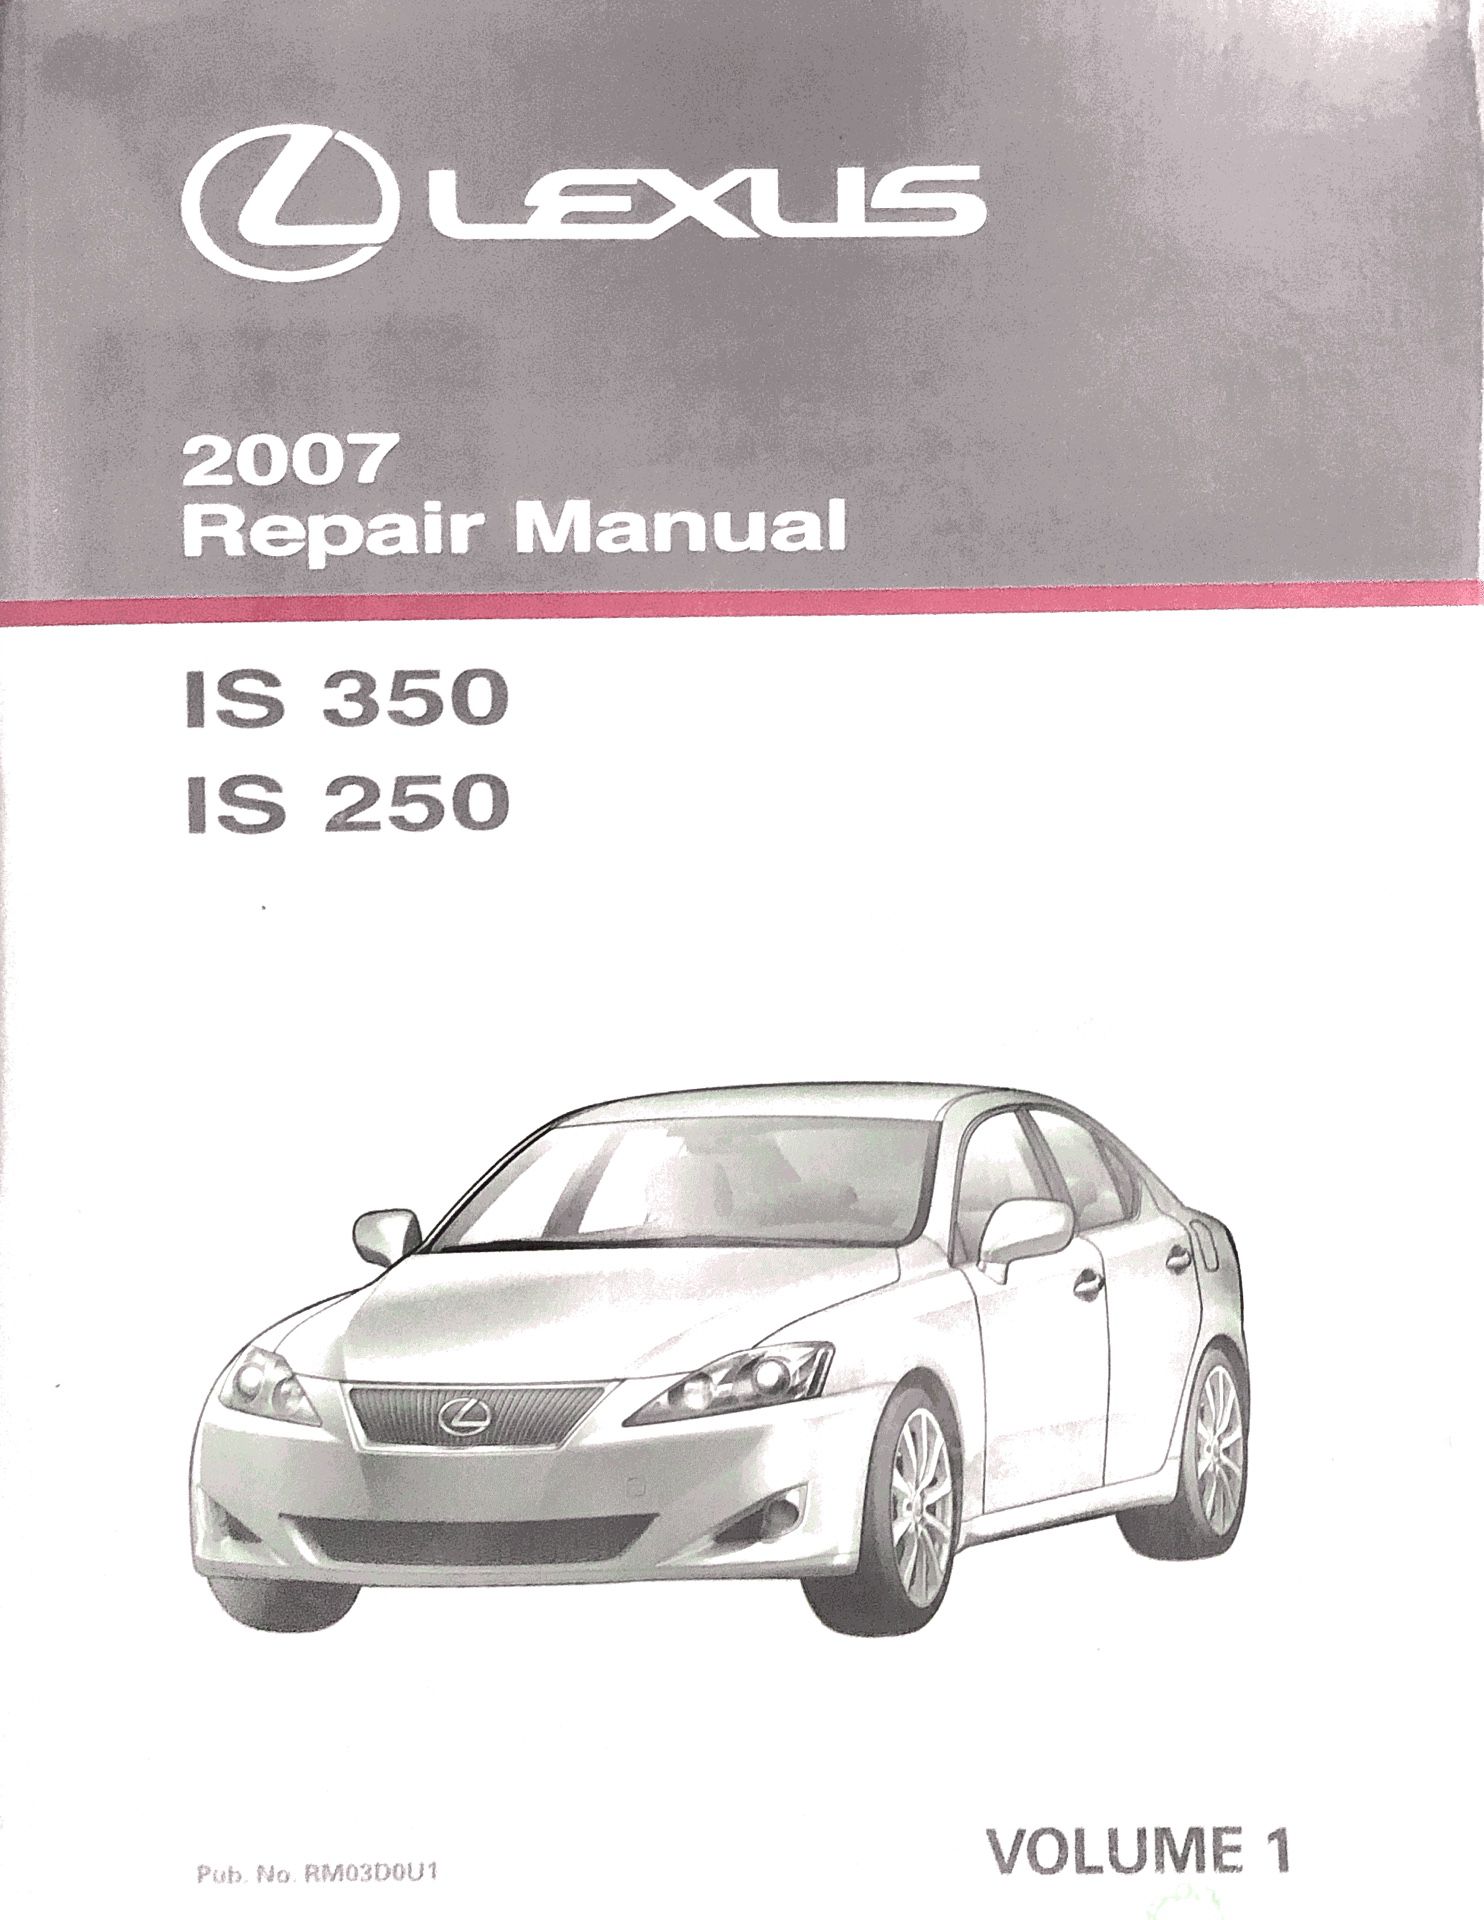 2007 Lexus IS 250/350 Repair Manual Vol. 1